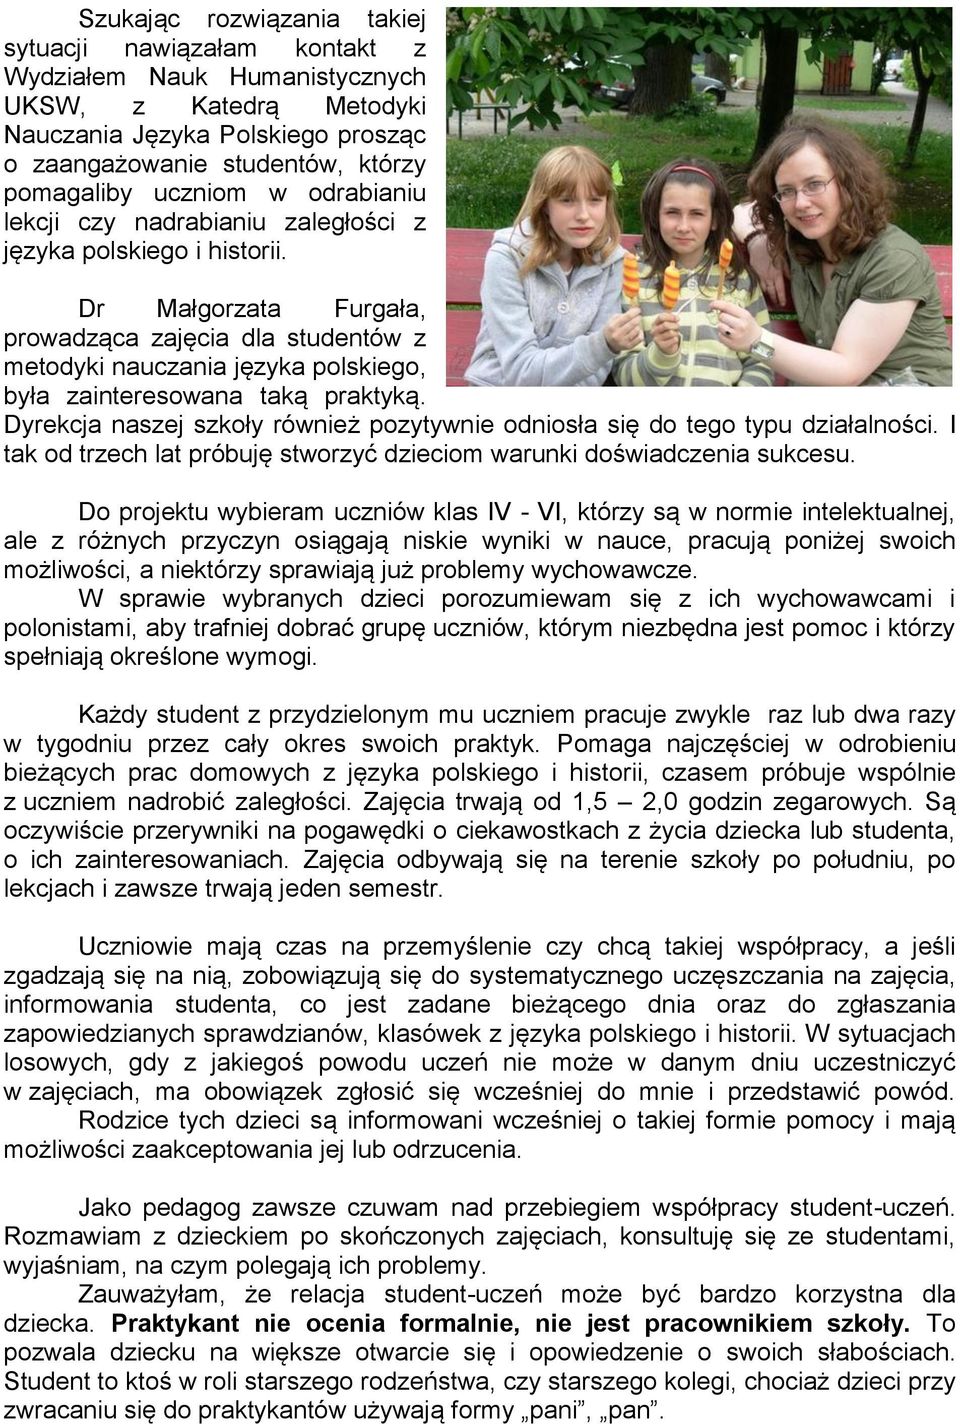 Dr Małgorzata Furgała, prowadząca zajęcia dla studentów z metodyki nauczania języka polskiego, była zainteresowana taką praktyką.